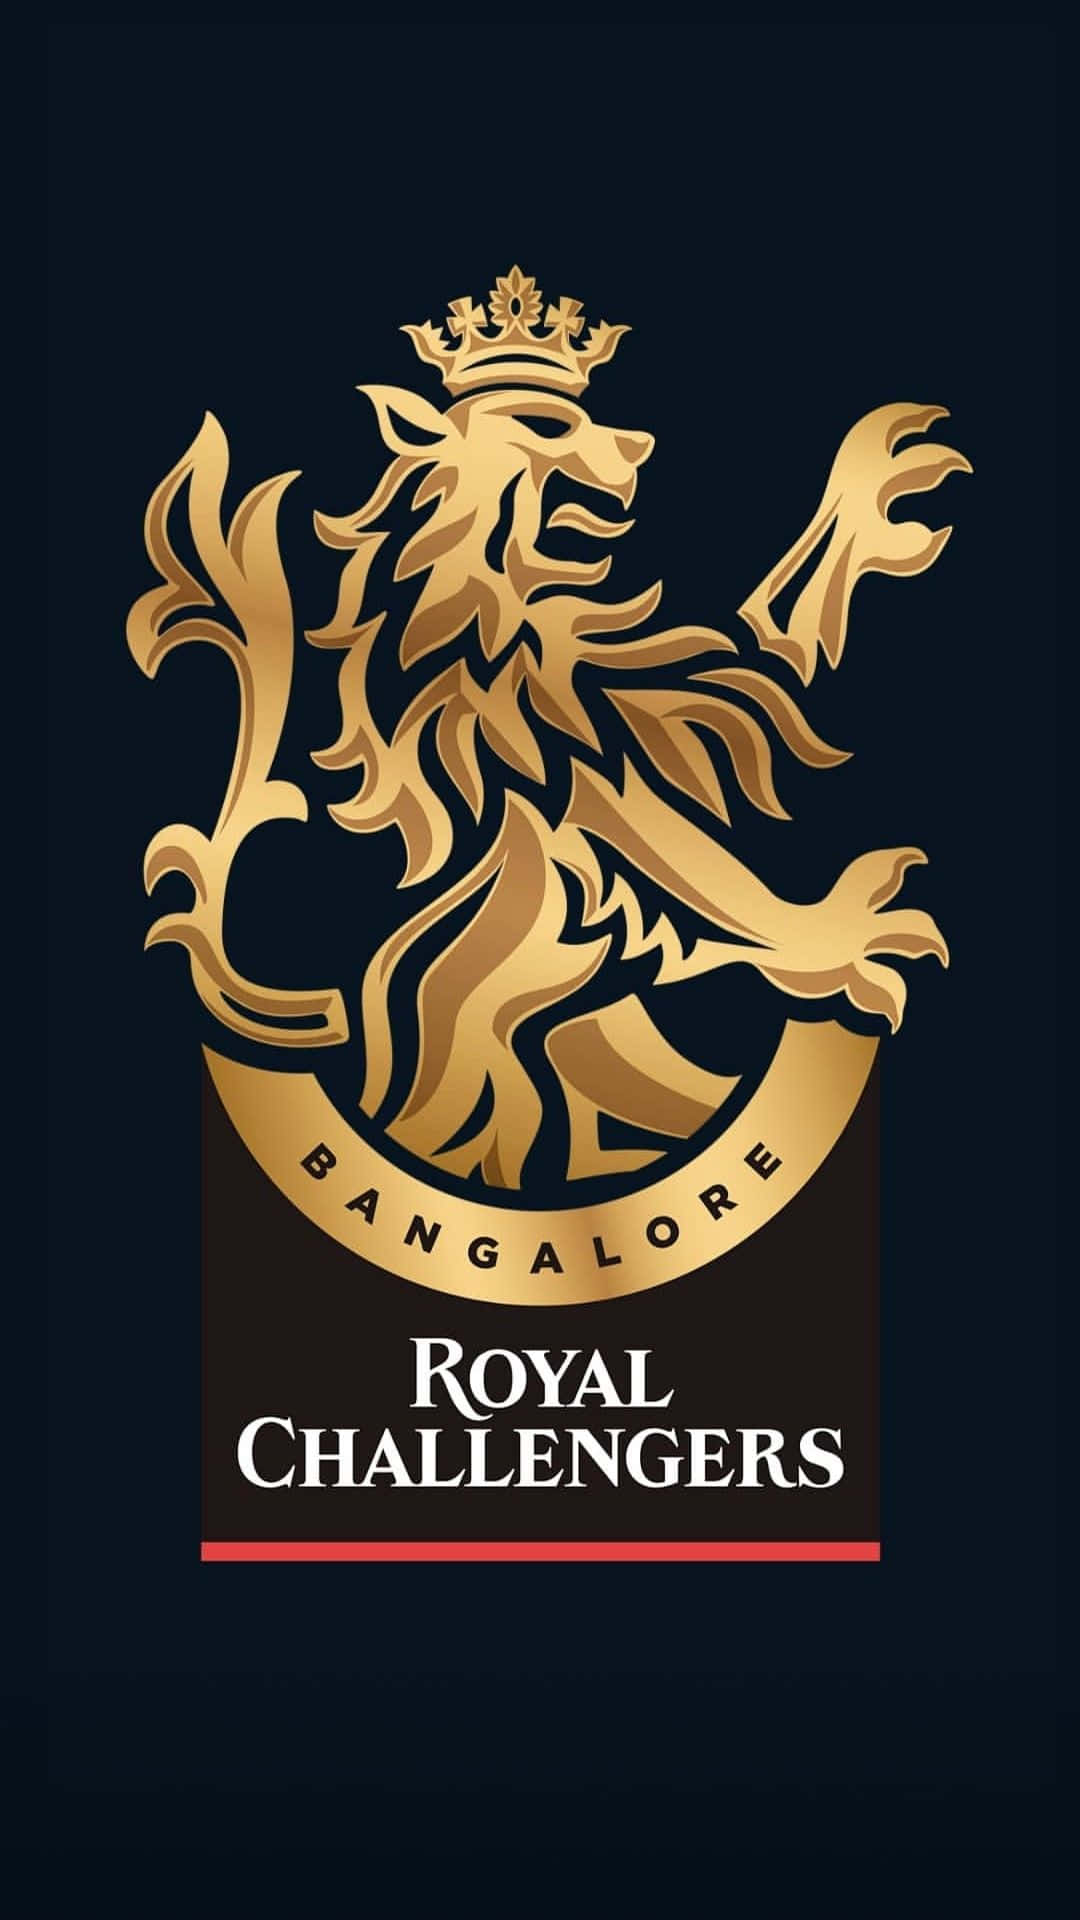 Logotipodos Royal Challengers Em Um Fundo Preto